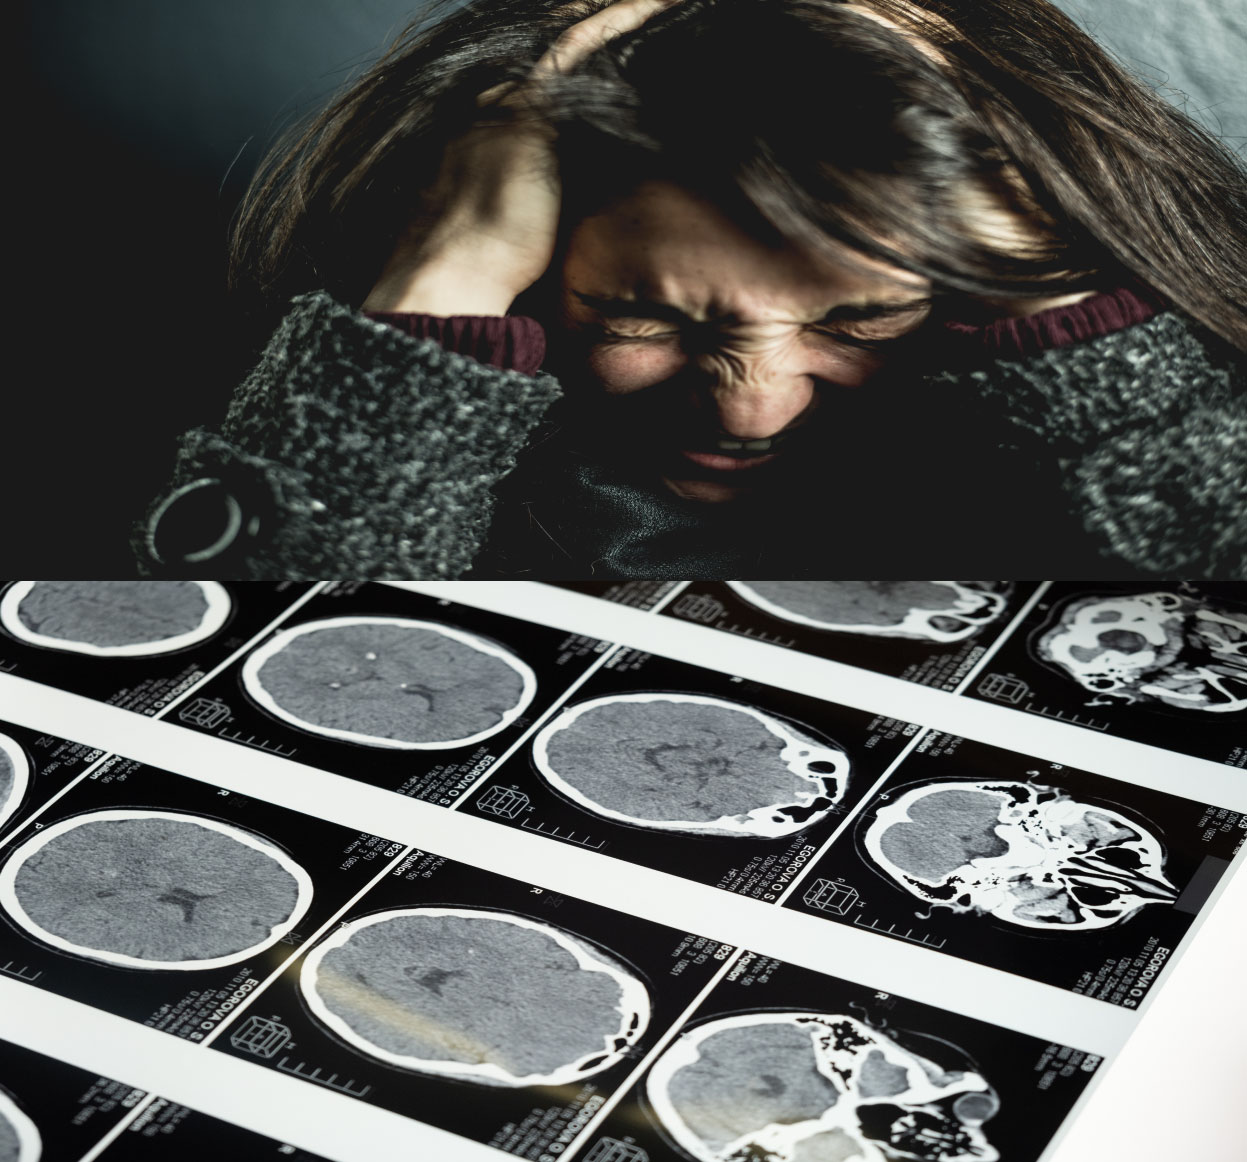 알츠하이머로 인해 스트레스를 받고 있는 중년 여성의 사진과 뇌 엑스레이 사진이 보이는 이미지